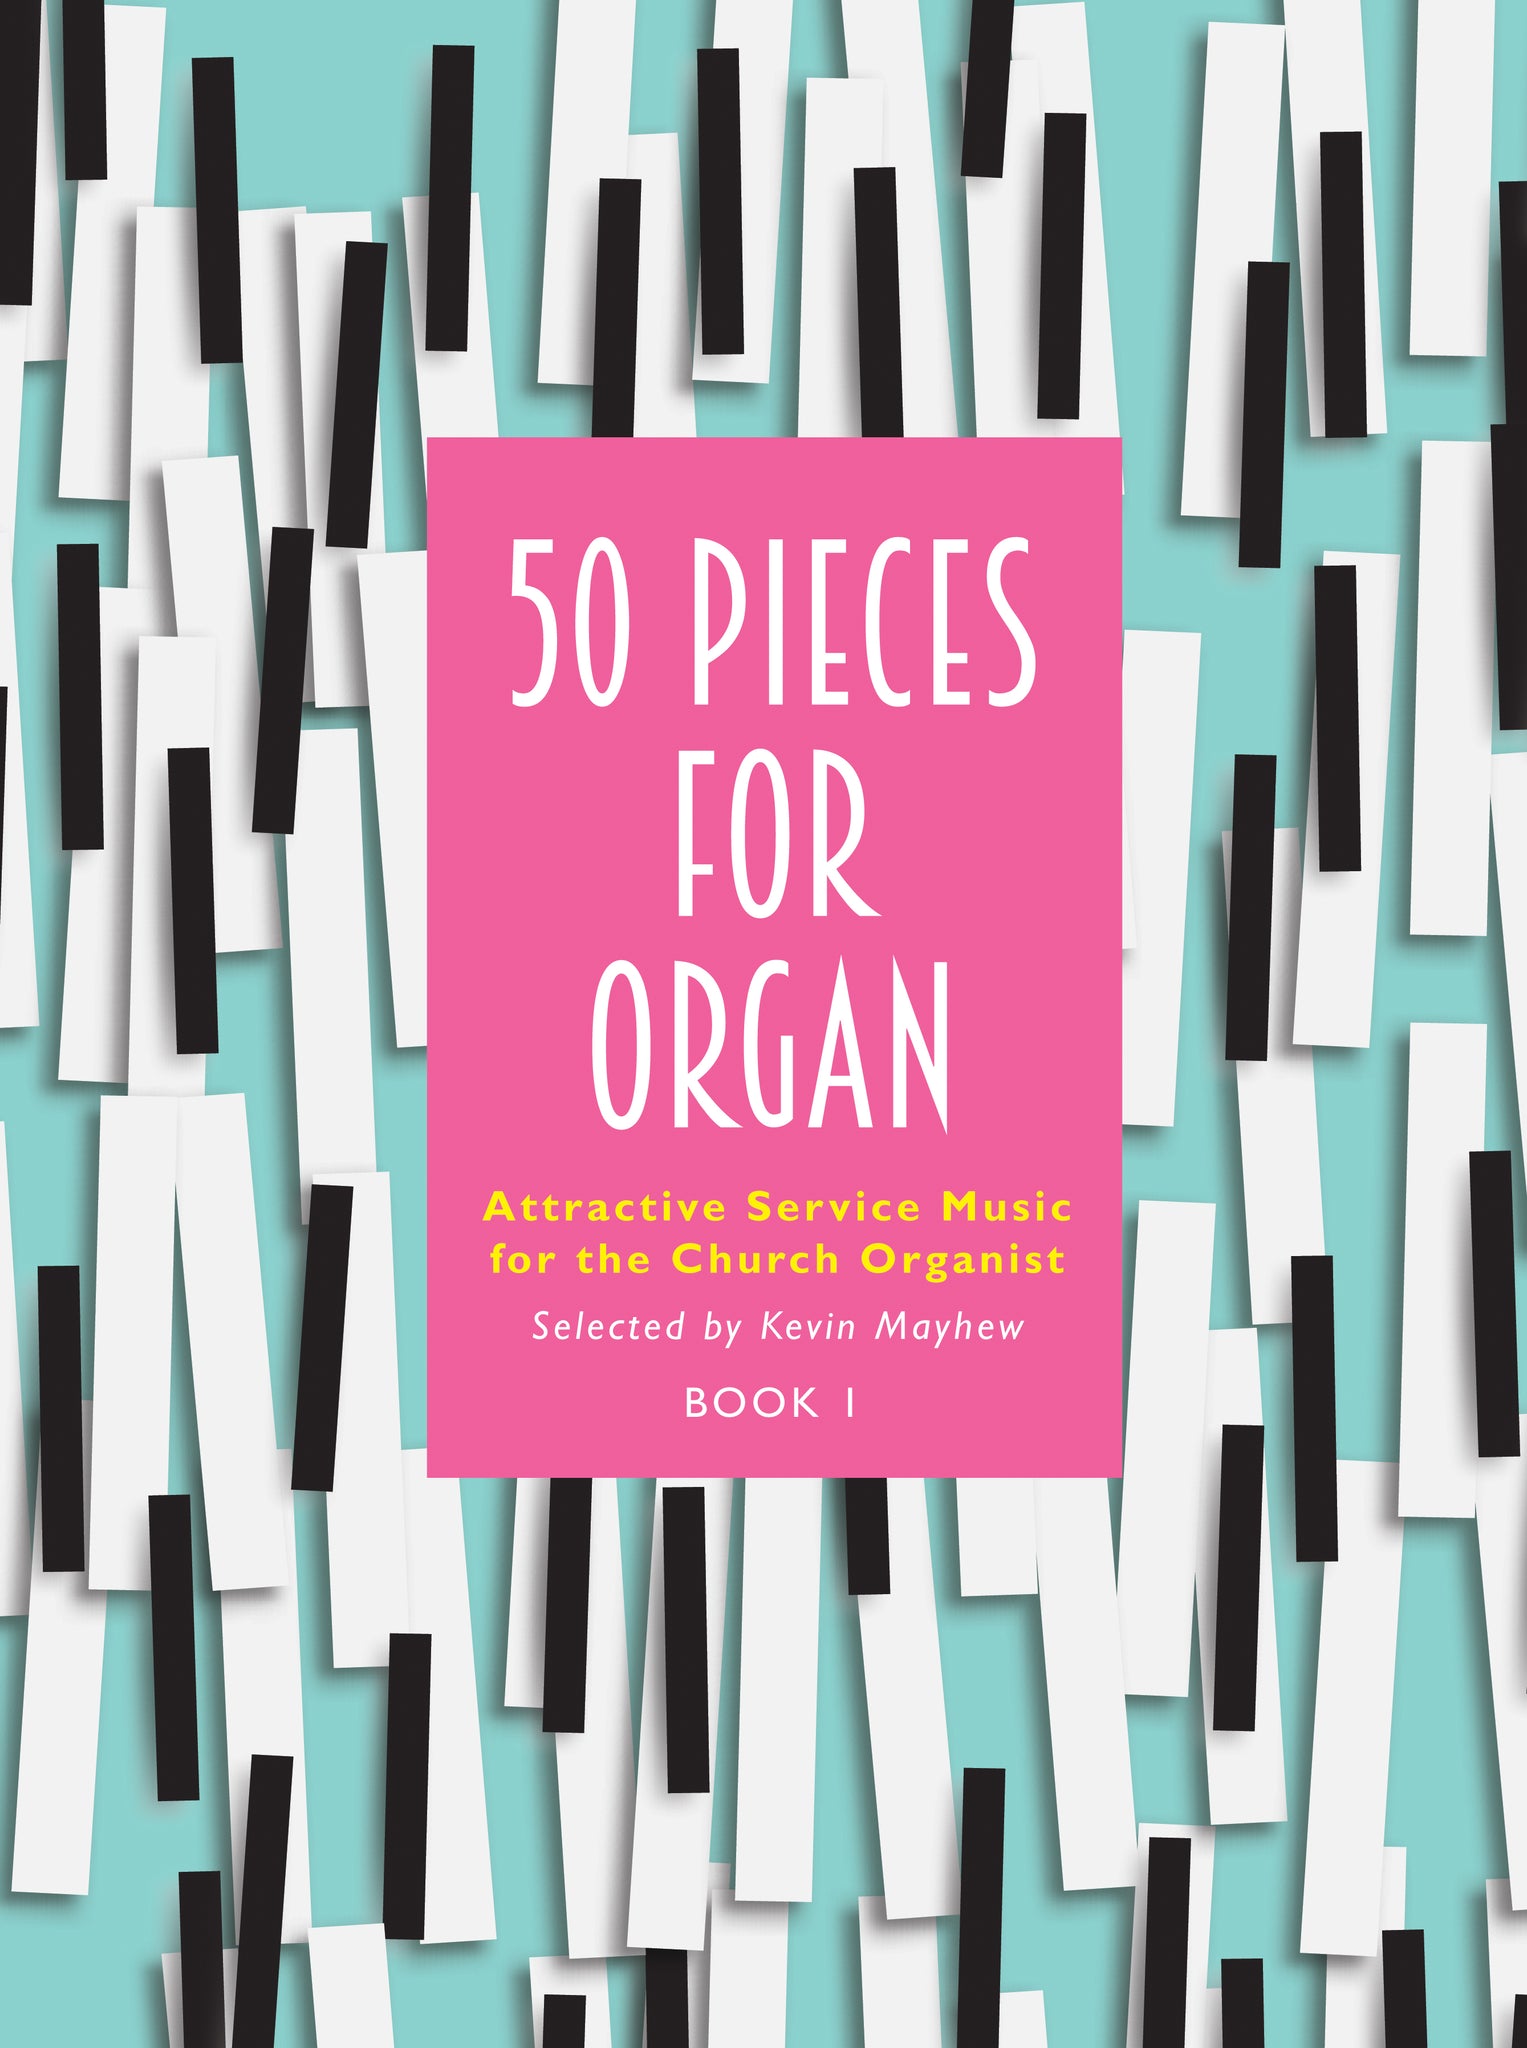 50 Pieces For Organ Book 150 Pieces For Organ Book 1